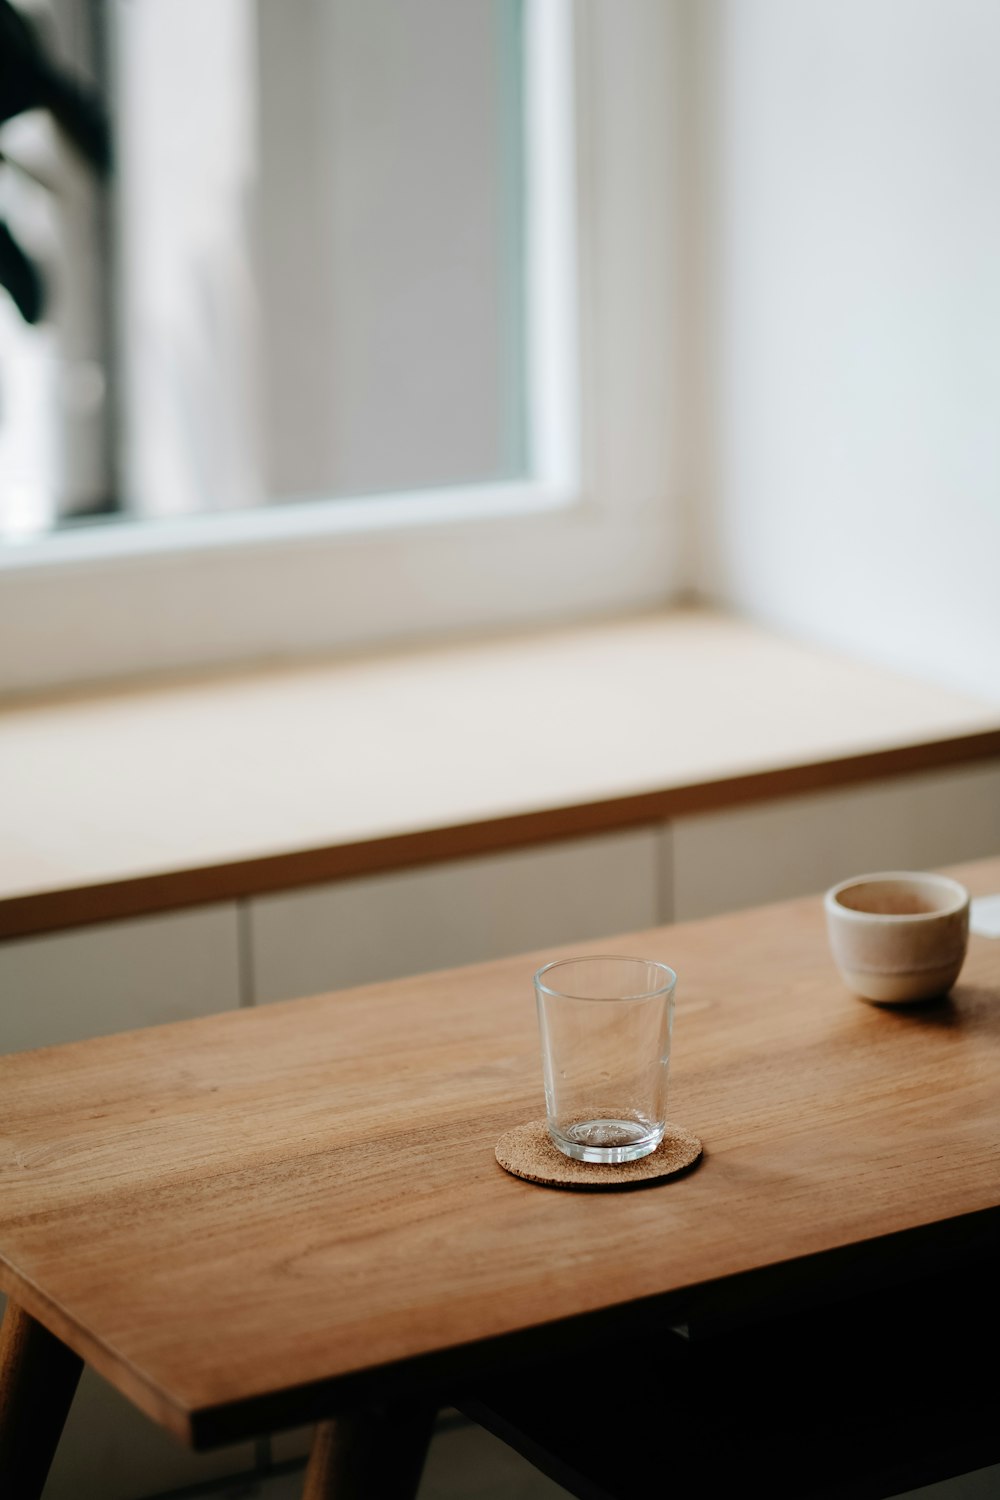 Vaso transparente sobre mesa de madera marrón